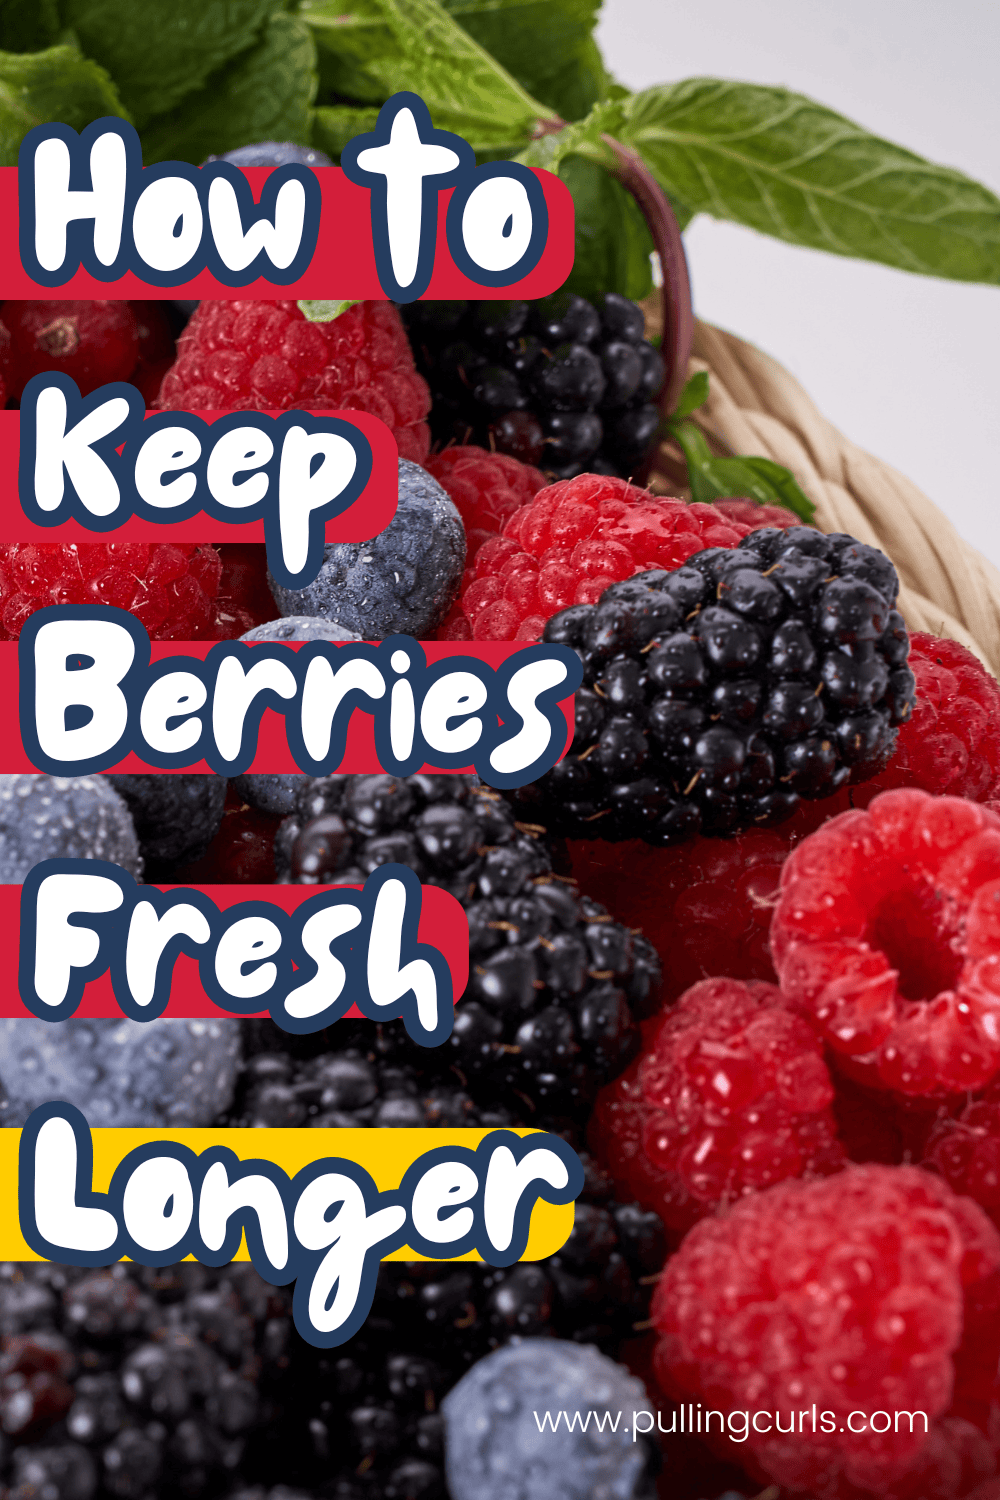 berries / how to keep berries fresh longer via @pullingcurls